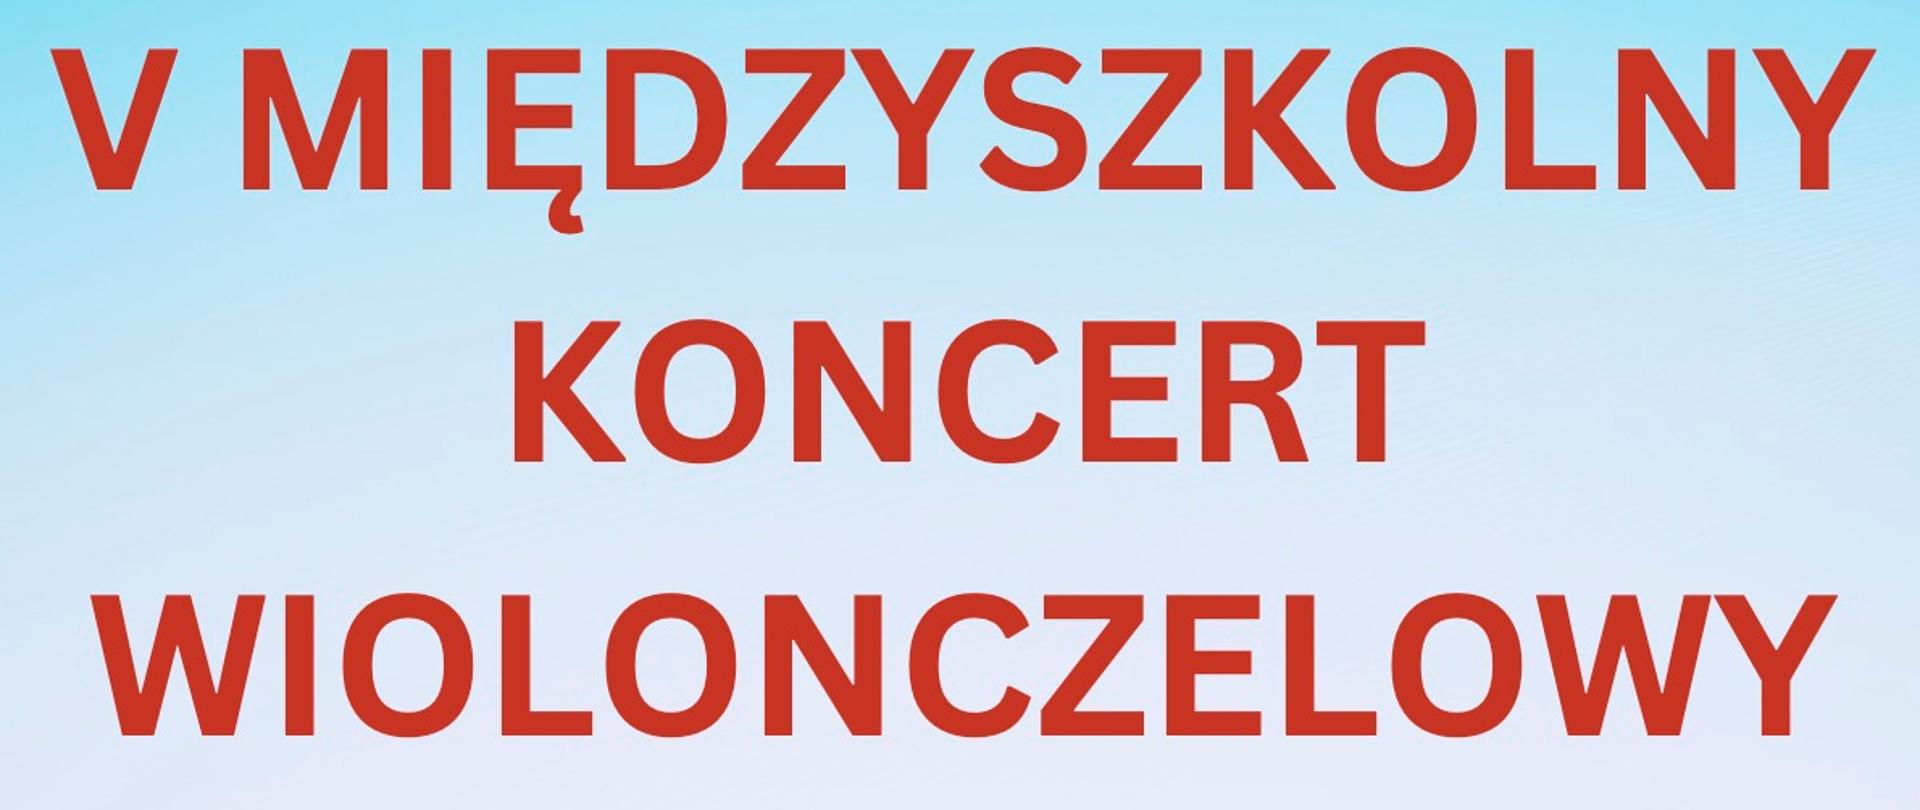 Plakat, napis duży czerwony "V Międzyszkolny koncert wiolonczelowy" poniżej lista szkół z których uczniowie biorą udział, góra plakatu niebieska , na dole grafika zielonej trawy 